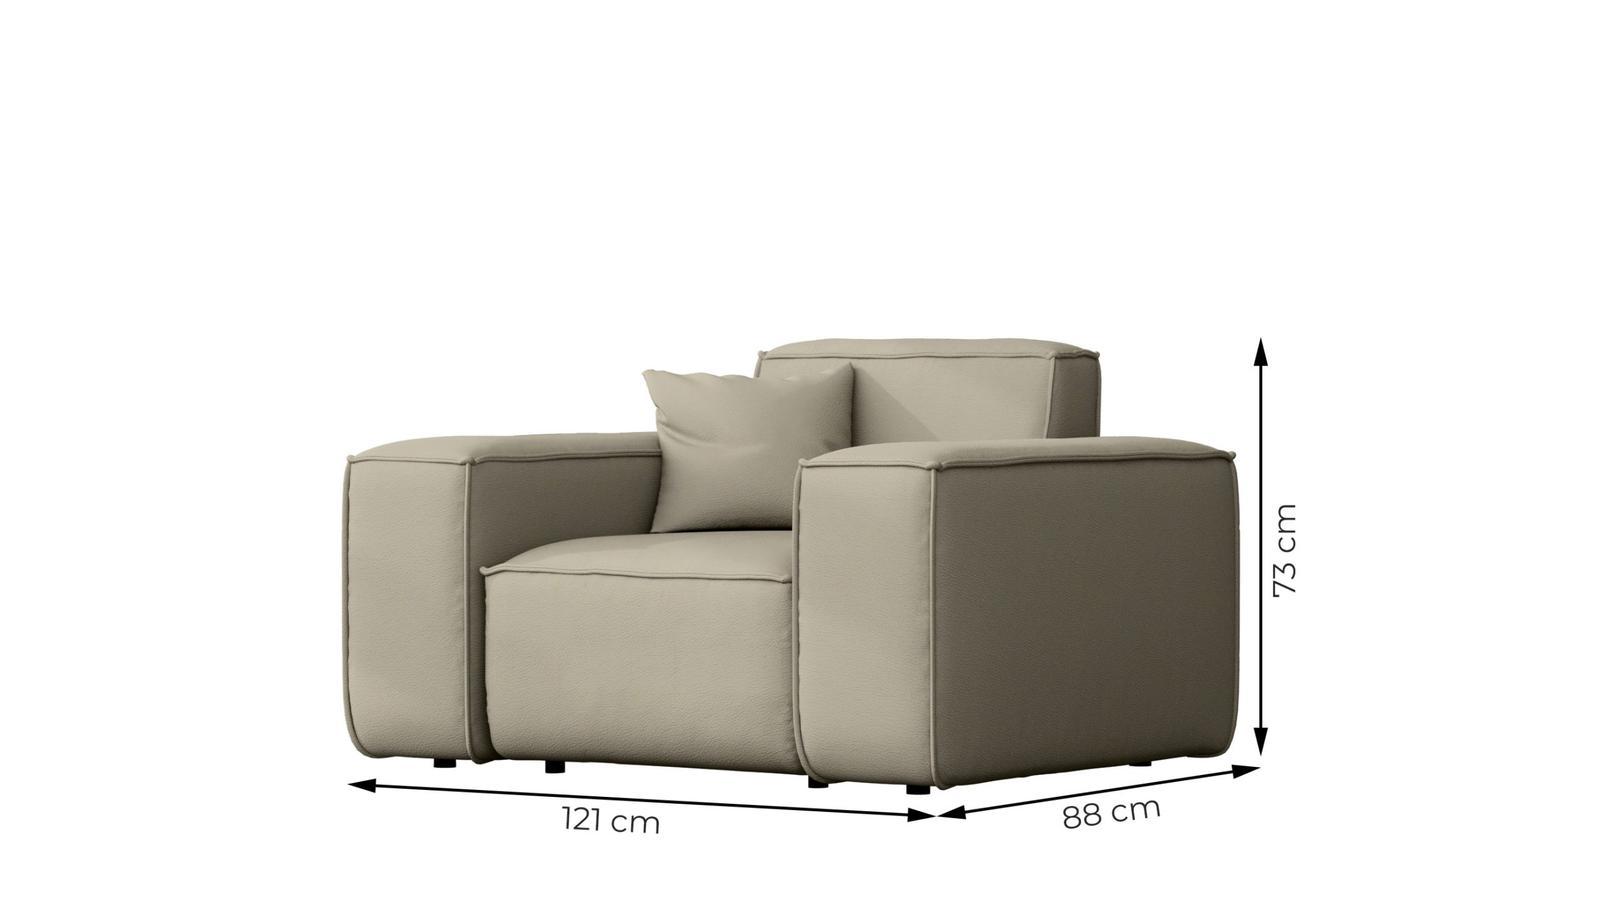 Sofa ogrodowa MALIBU 121x73x88 cm wodoodporna UV 1-os + poduszka do ogrodu jasnozielona nr. 3